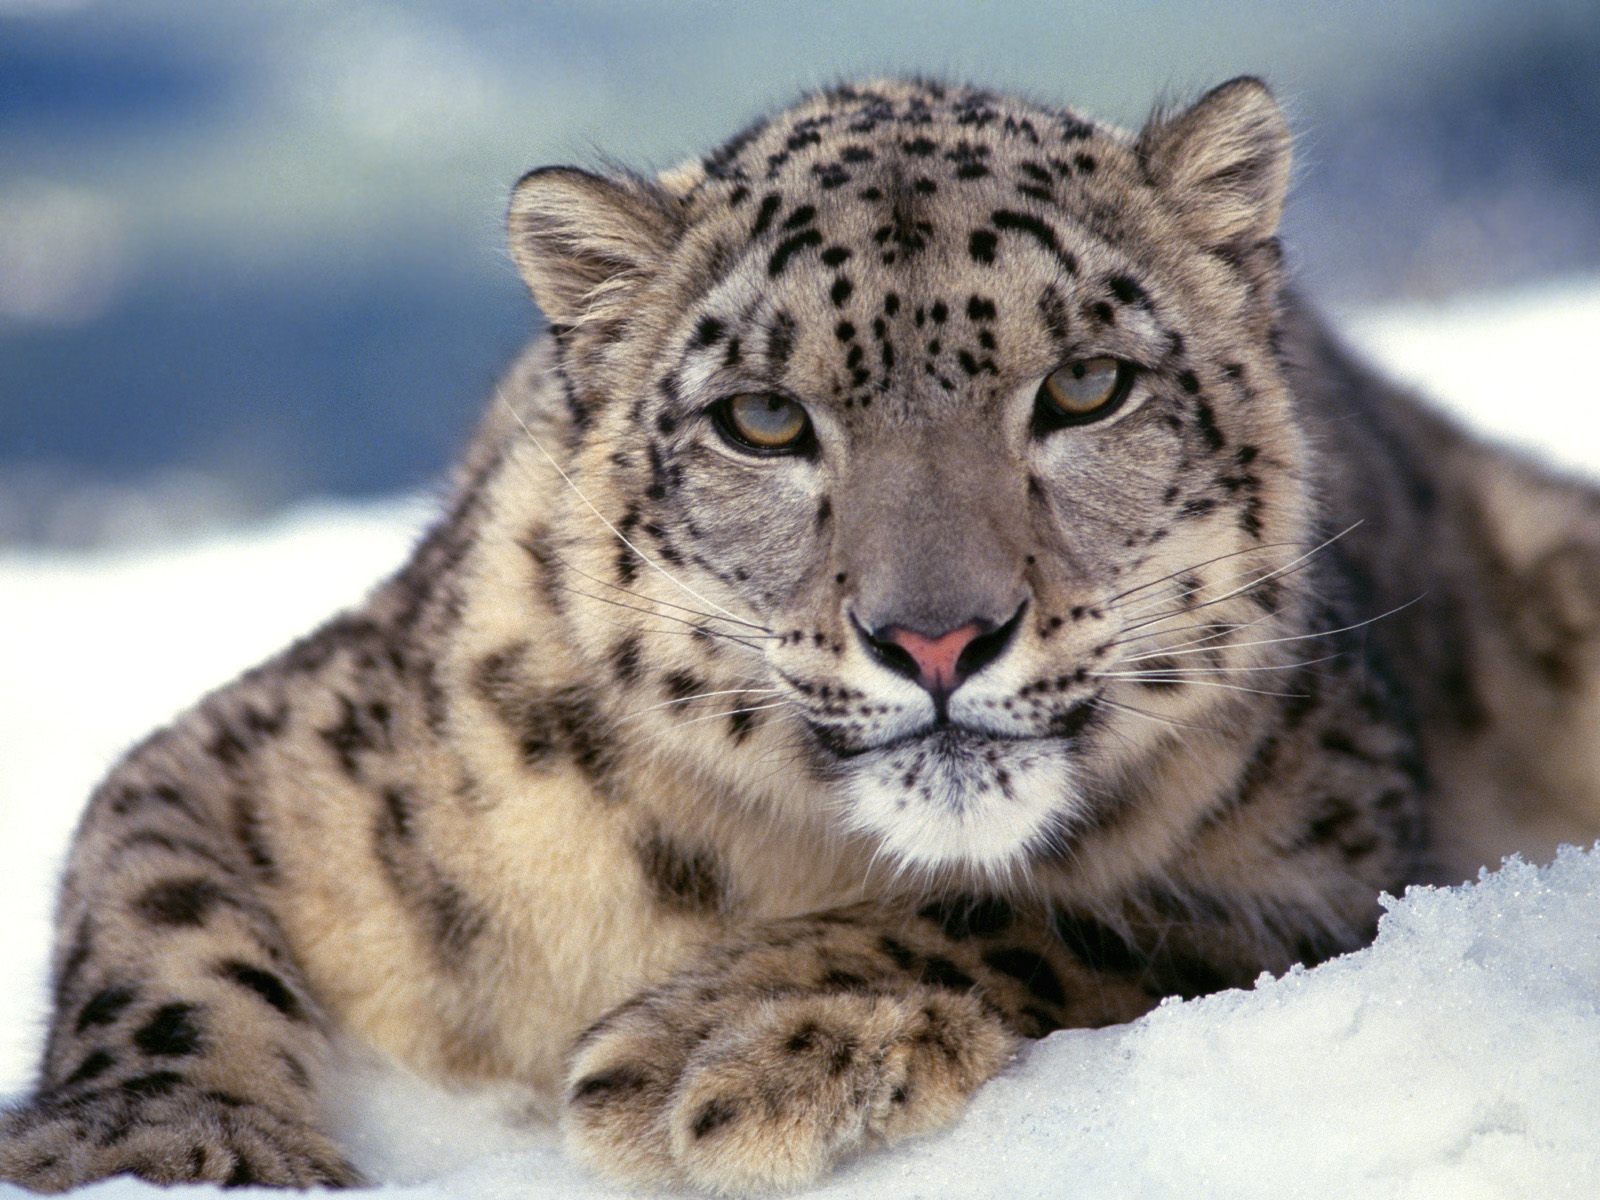 Снежный барс · Кошачьи · Хищные · МЛЕКОПИТАЮЩИЕ · Животные · Муниципальное  Бюджетное Учреждение Культуры «Зоопарк» - официальный сайт